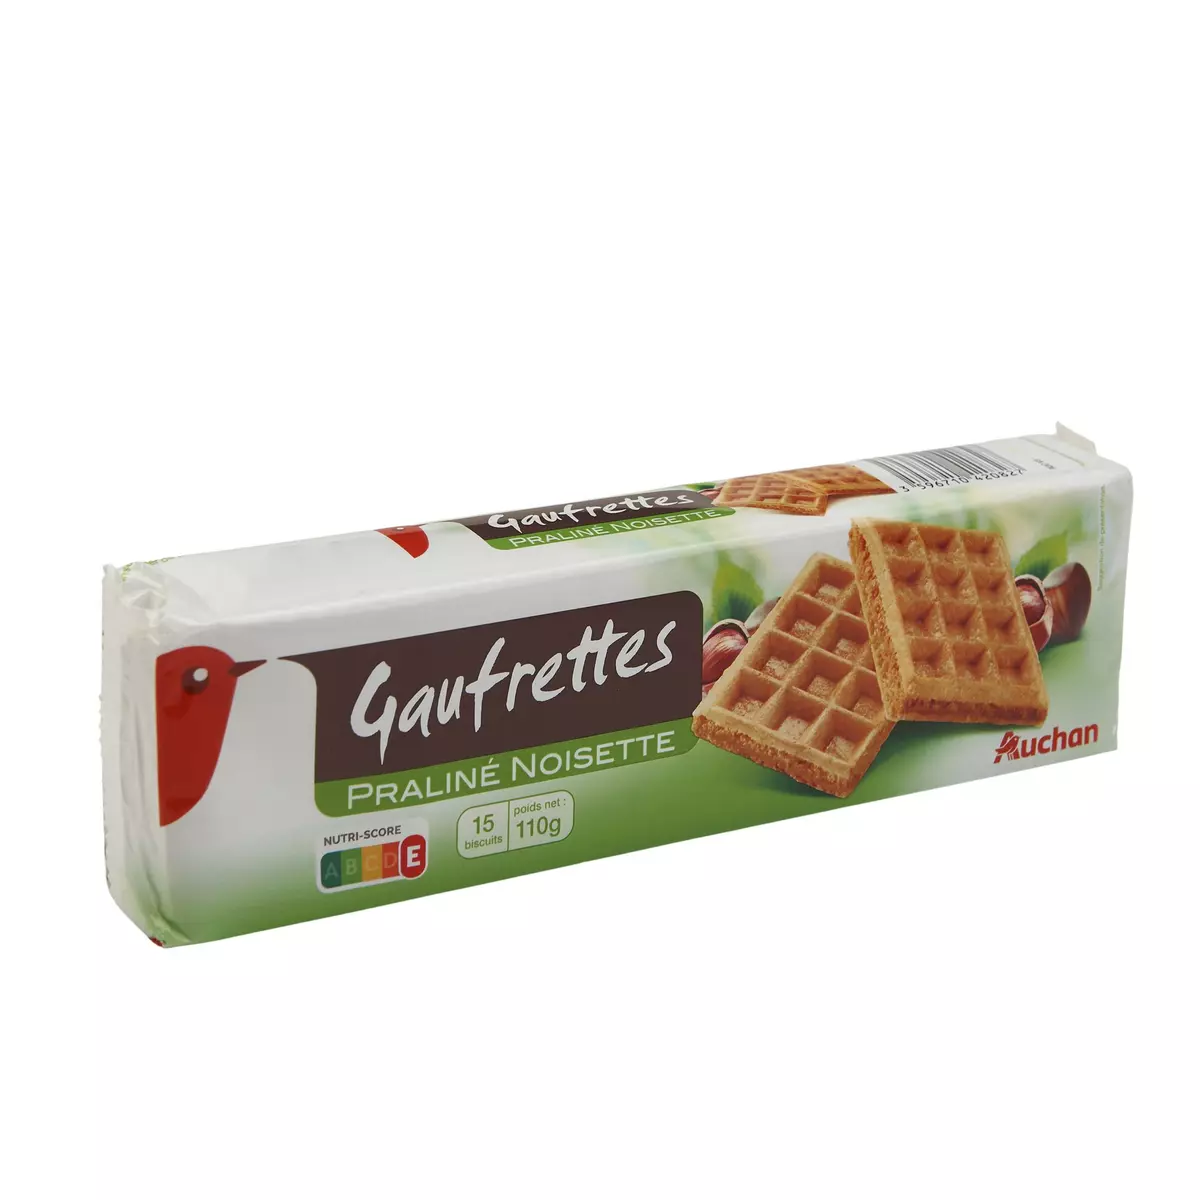 AUCHAN Gaufrettes fourrées praliné noisette 15 biscuits 110g